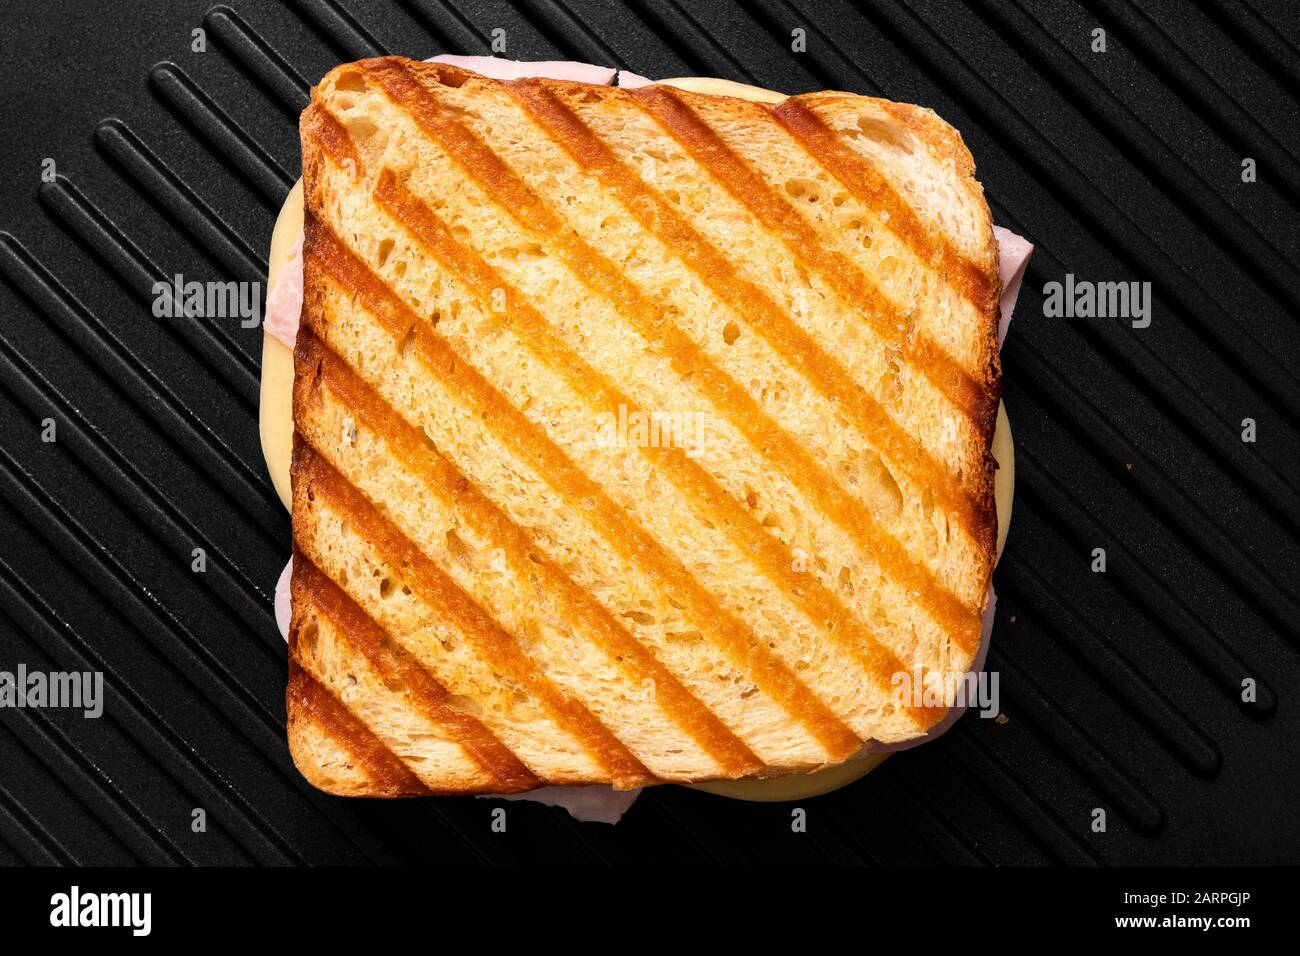 Sandwich au fromage grillé et au jambon avec des marques de gril isolées sur le gril antiadhésif noir. Vue de dessus. Banque D'Images